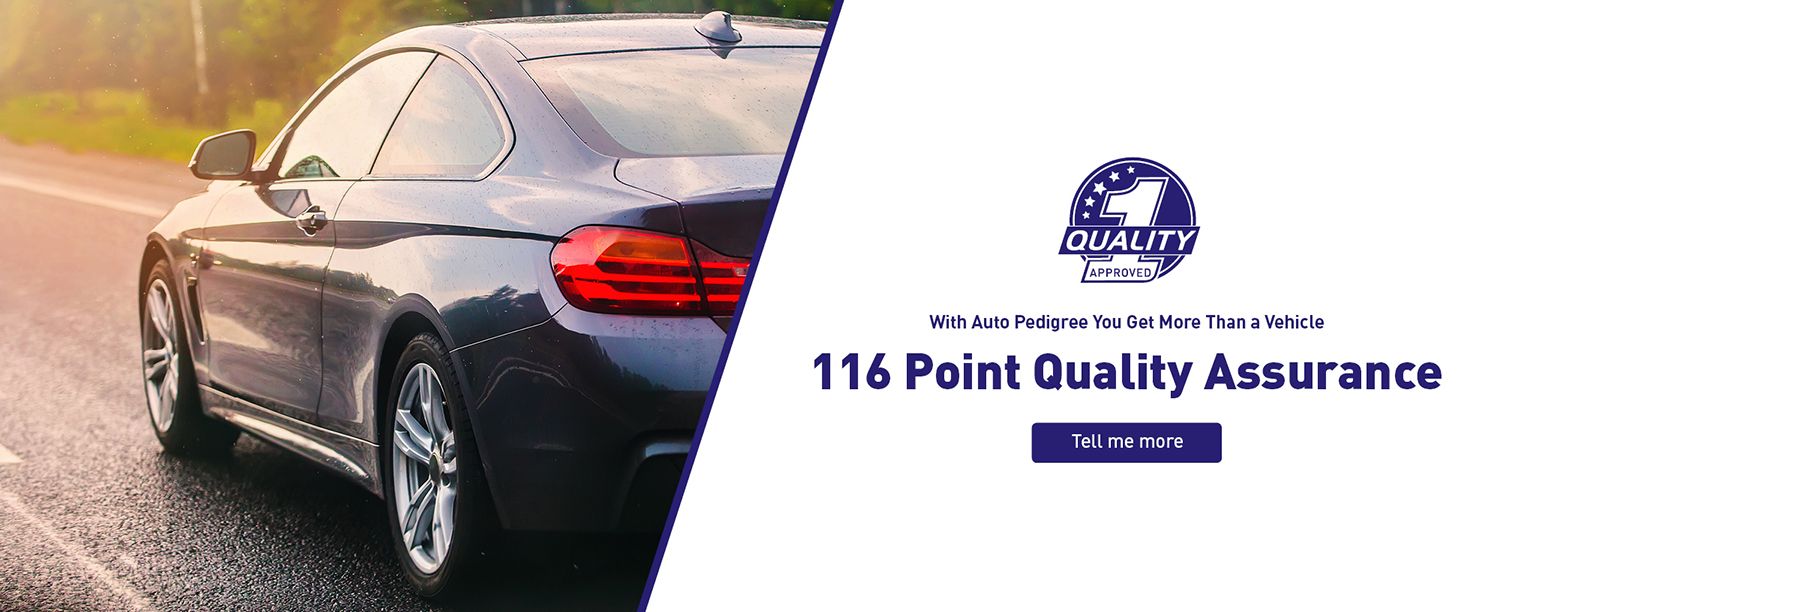 Auto Pedigree 116 Quality Check